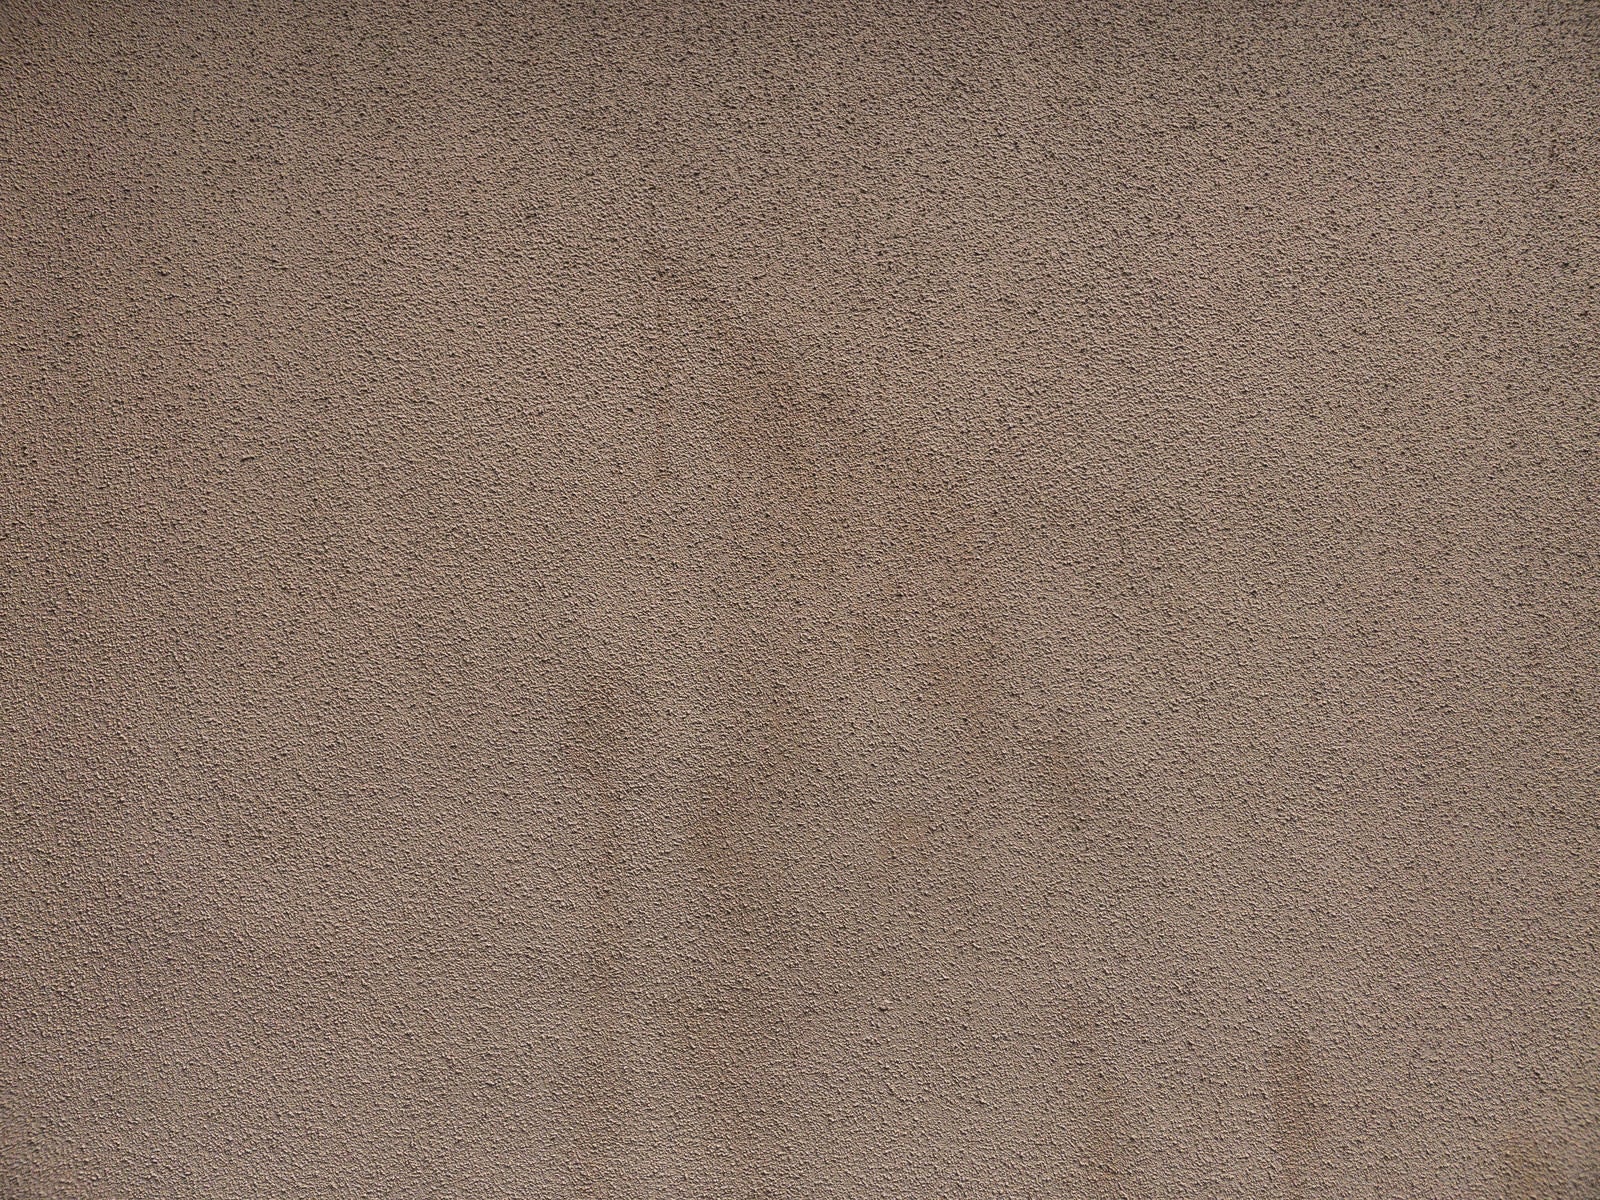 「シミが残るモルタル仕上げの壁」の写真